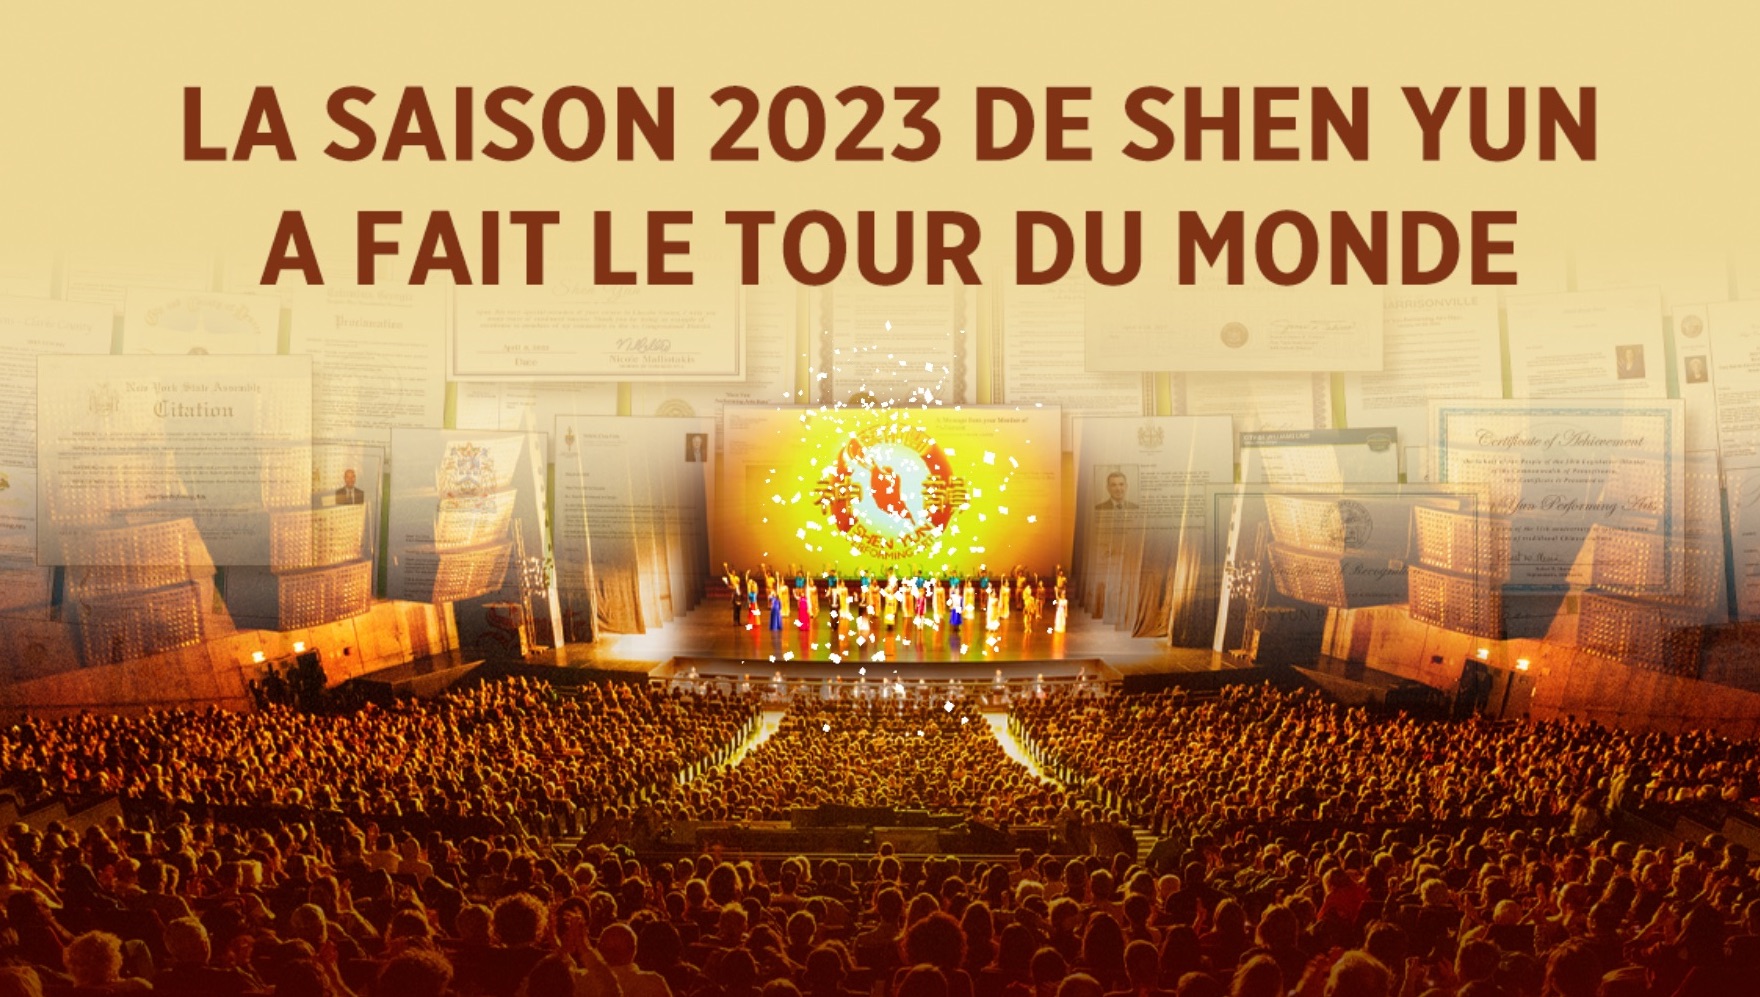 Le tour du monde de la saison 2023 de Shen Yun Performing Arts